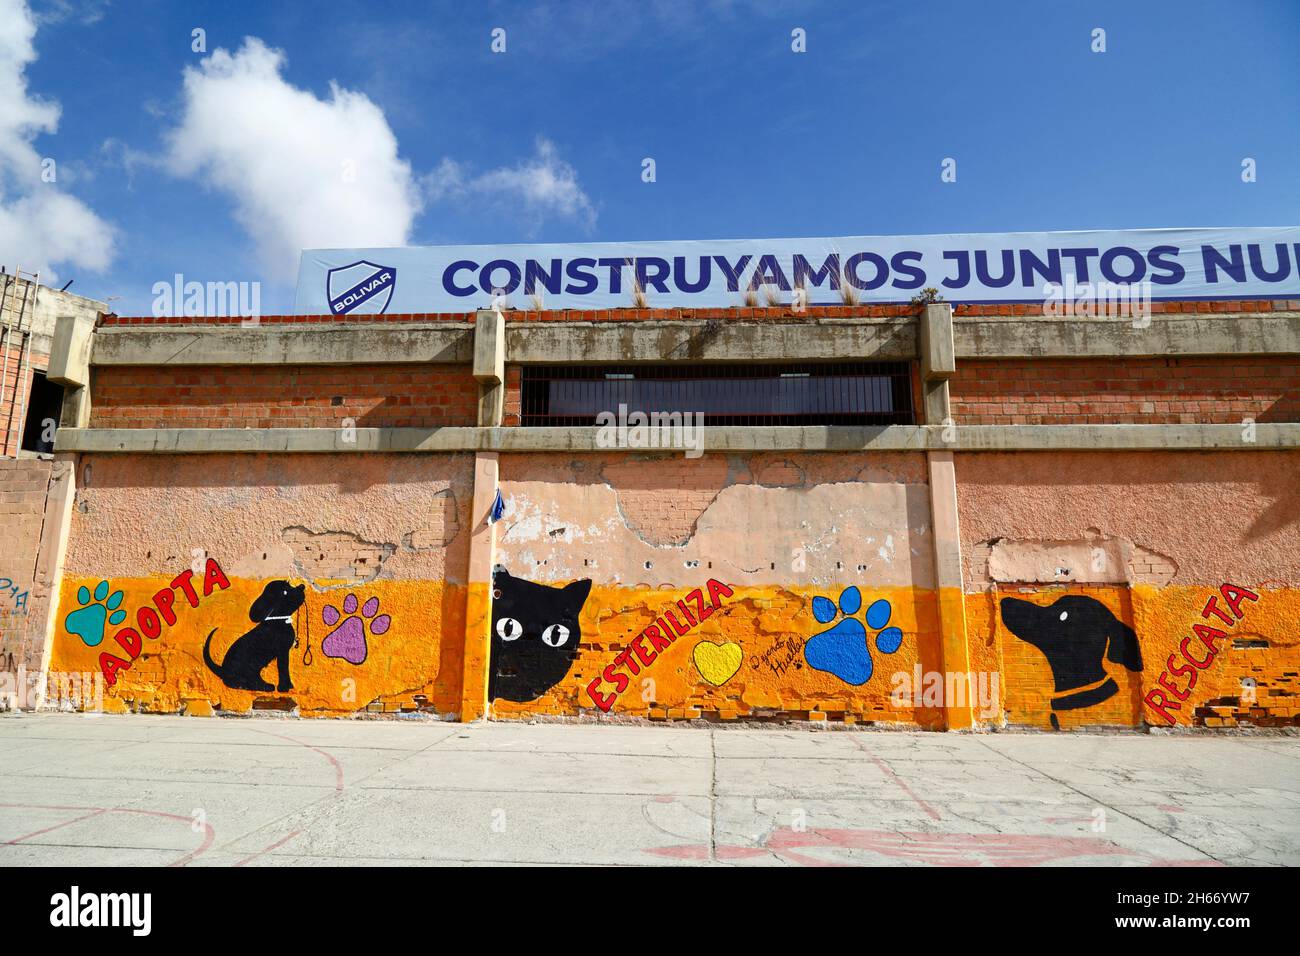 Wandgemälde an der Außenseite des Bolivar-Stadions ermutigen die Menschen, Tiere als Haustiere zu adoptieren, anstatt neue zu kaufen, und auch, sie zu sterilisieren, um die Bevölkerung von verlassenen Haustieren zu reduzieren, die auf den Straßen leben. Wie viele Städte in Lateinamerika haben auch La Paz und das benachbarte El Alto eine große Population von Straßenhunden, von denen viele verlassene Haustiere sind und eine Gefahr für Gesundheit und Sicherheit darstellen können. Tembladerani, La Paz, Bolivien Stockfoto